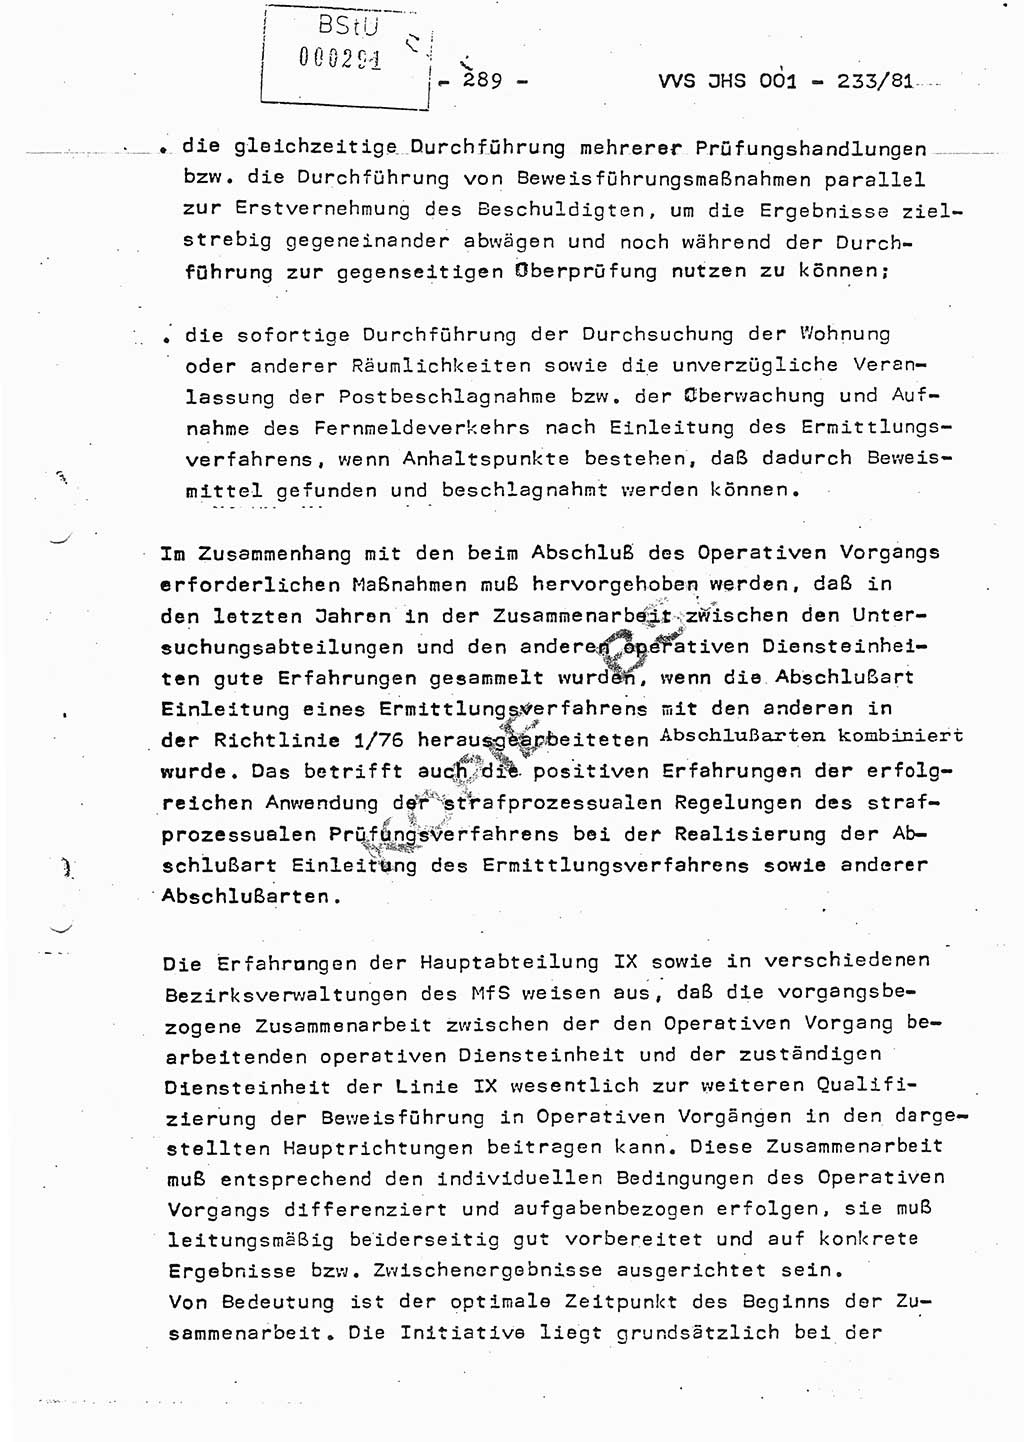 Dissertation Oberstleutnant Horst Zank (JHS), Oberstleutnant Dr. Karl-Heinz Knoblauch (JHS), Oberstleutnant Gustav-Adolf Kowalewski (HA Ⅸ), Oberstleutnant Wolfgang Plötner (HA Ⅸ), Ministerium für Staatssicherheit (MfS) [Deutsche Demokratische Republik (DDR)], Juristische Hochschule (JHS), Vertrauliche Verschlußsache (VVS) o001-233/81, Potsdam 1981, Blatt 289 (Diss. MfS DDR JHS VVS o001-233/81 1981, Bl. 289)